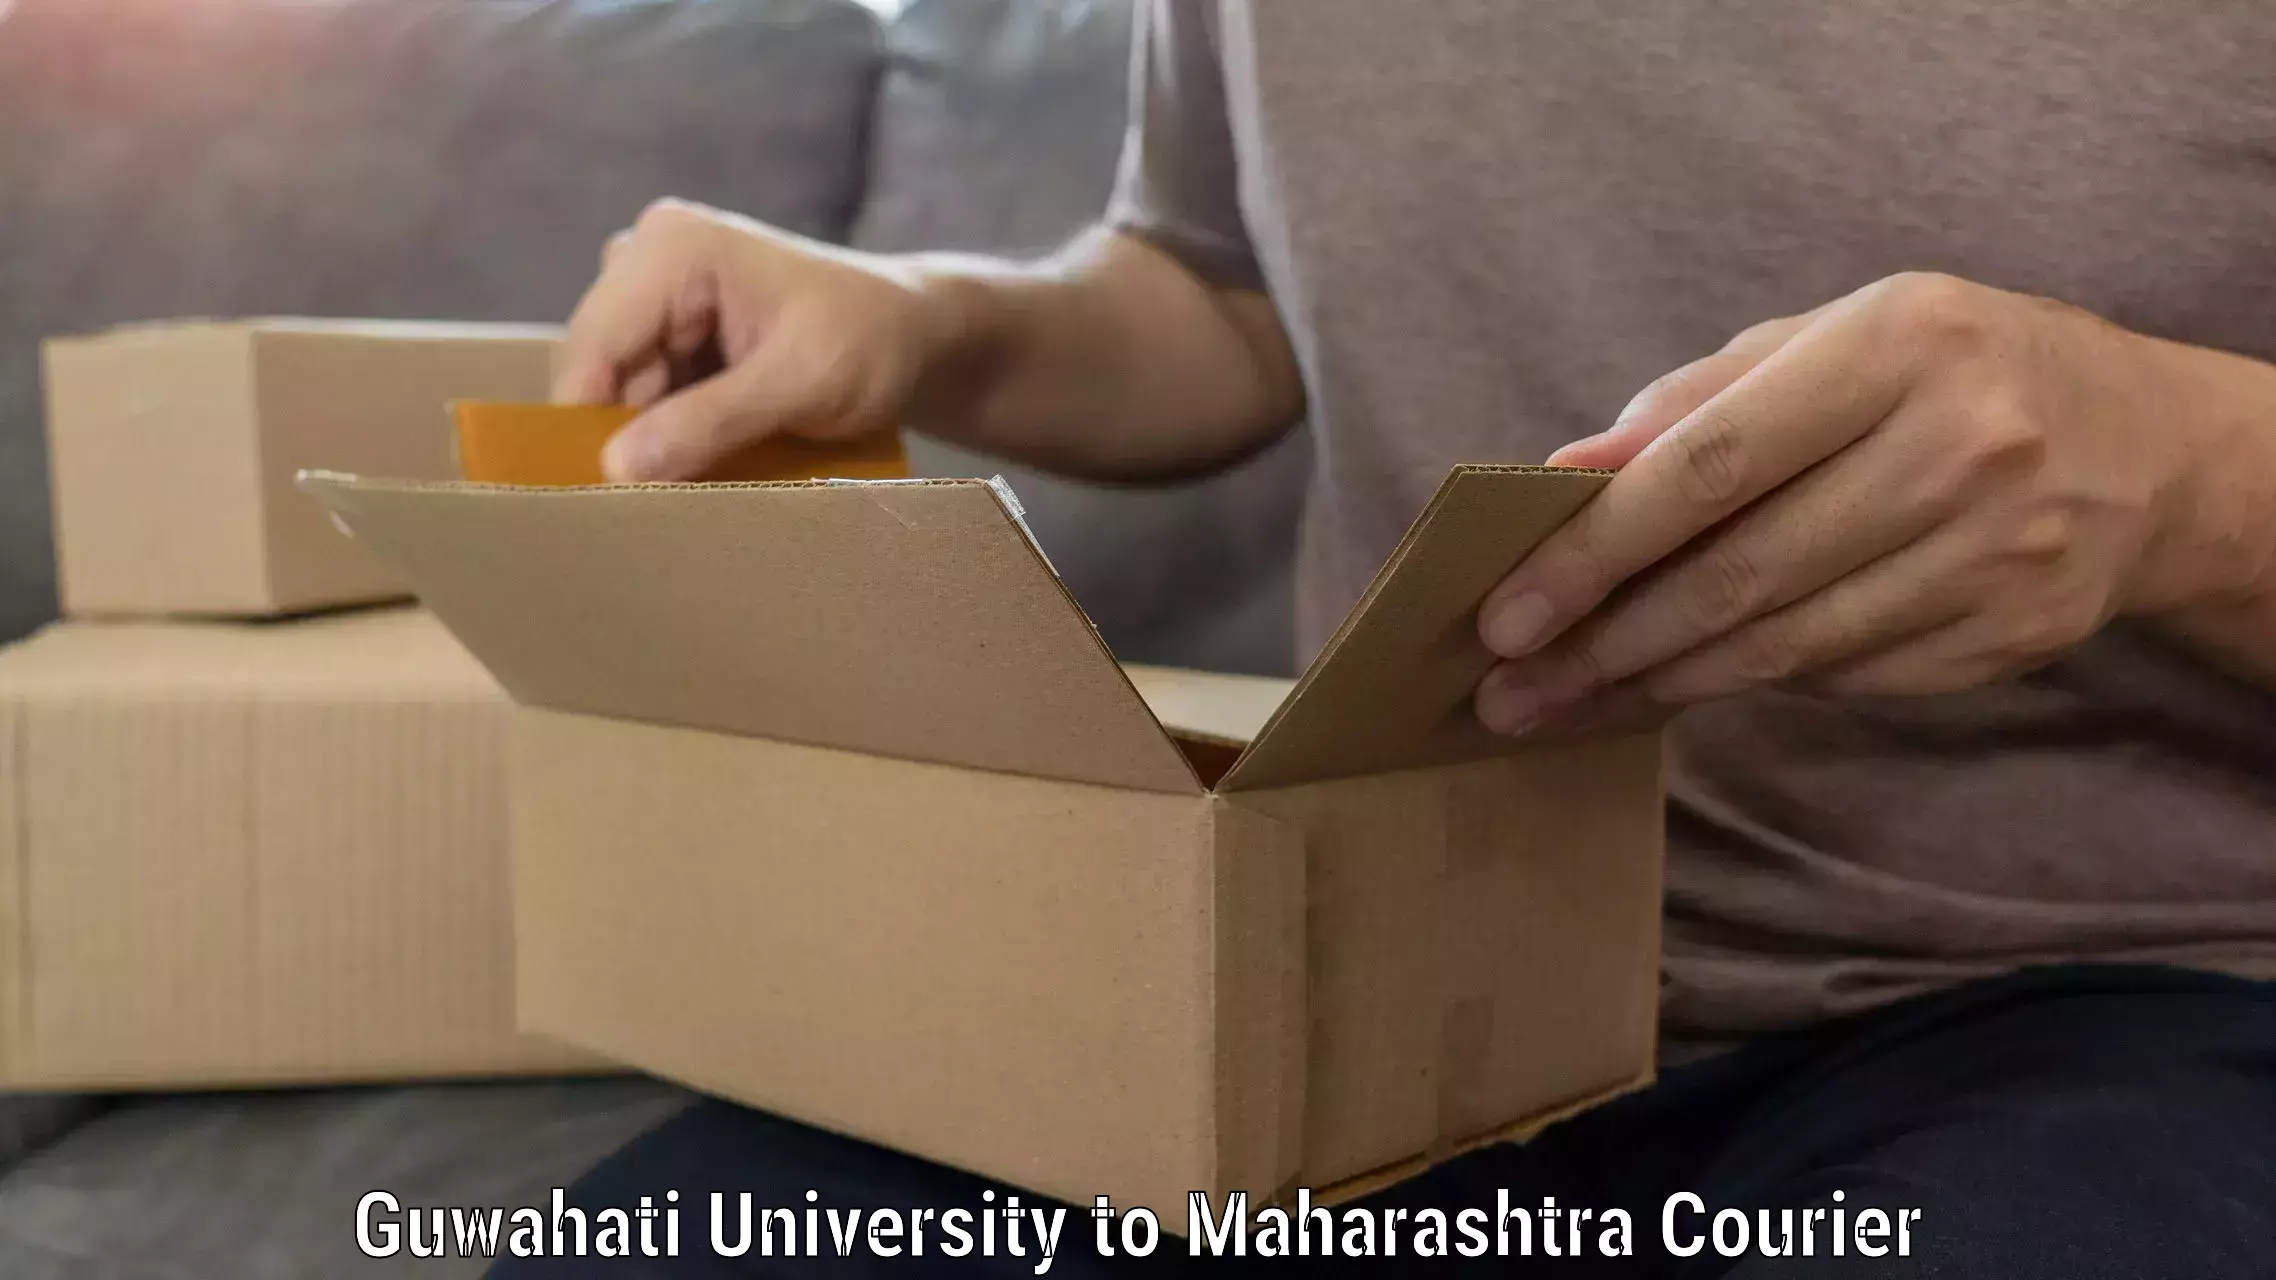 Furniture moving experts in Guwahati University to Mumbai Port